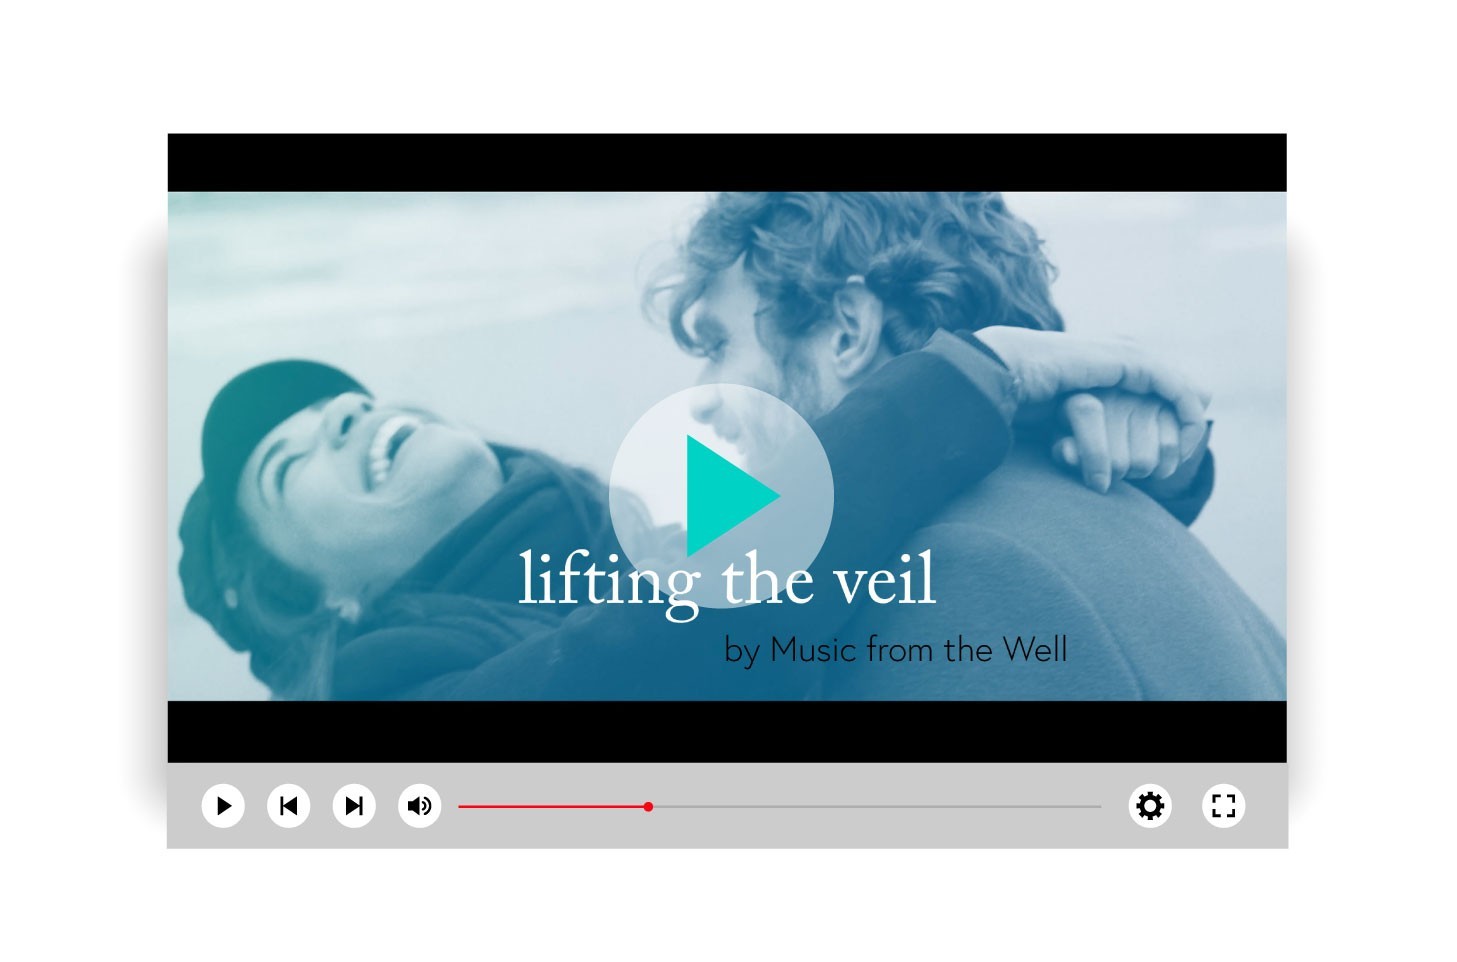 Video – “Lifting the Veil”